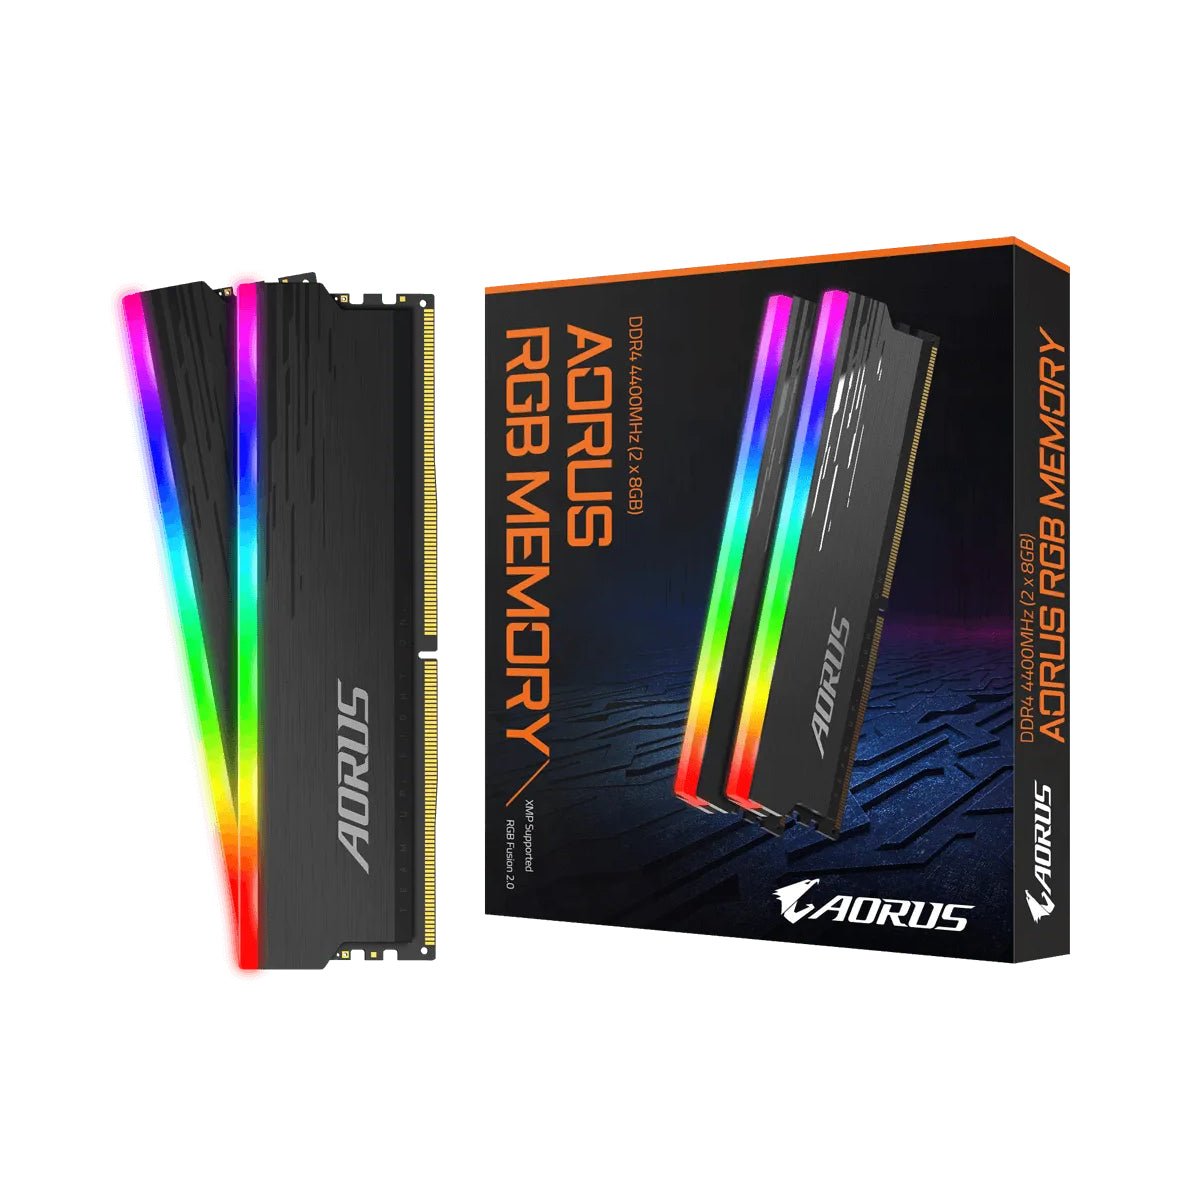 Gigabyte Aorus RGB Memory DDR4 16GB (2x8GB) 4400MHz - Gray - Store 974 | ستور ٩٧٤